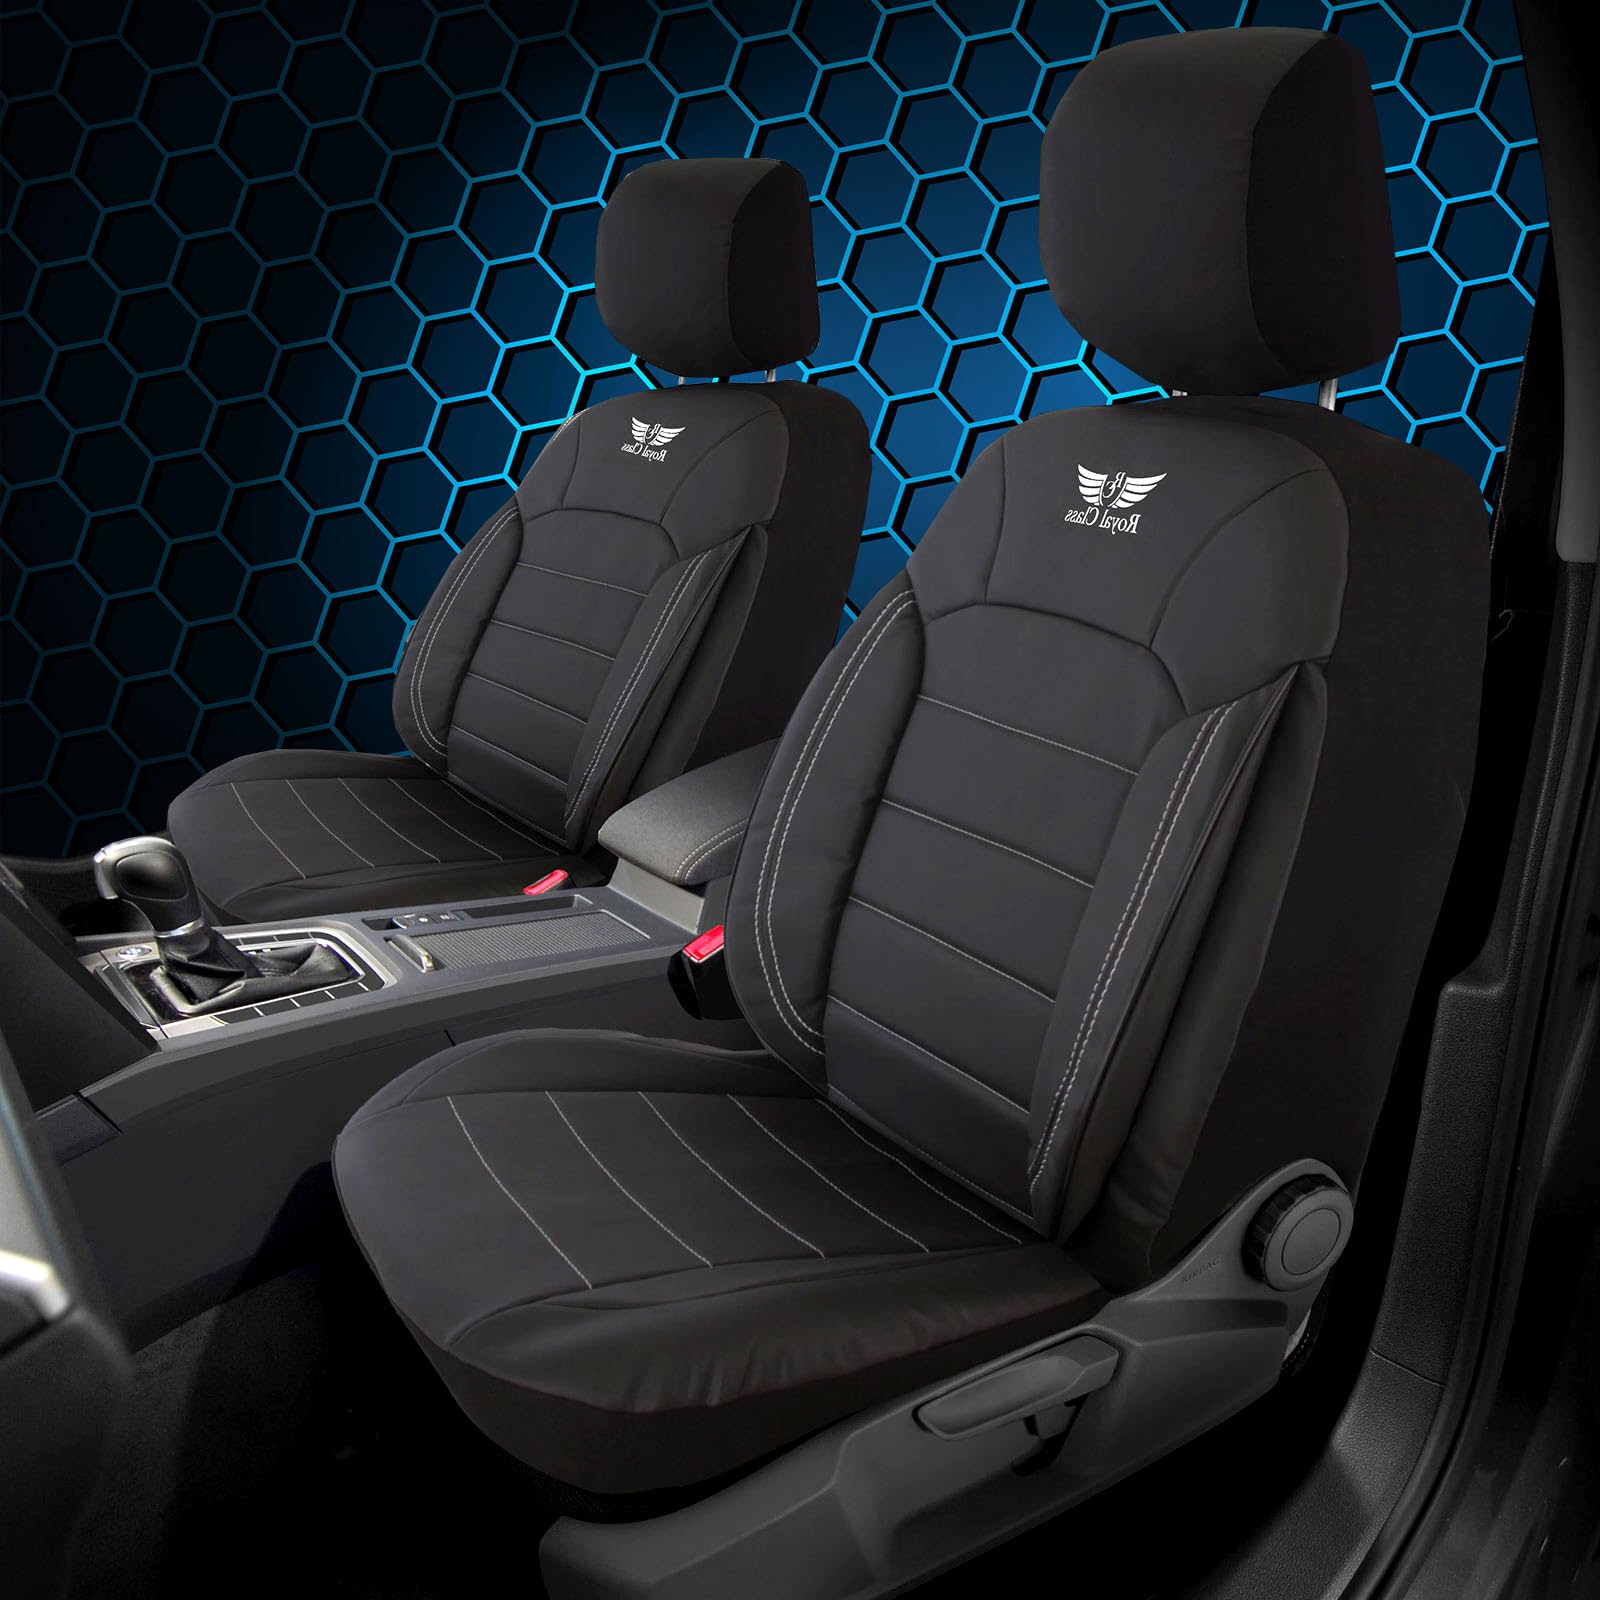 Auto Sitzbezüge Autositzauflage Kunstleder kompatibel mit Peugeot Expert in Schwarz Weiß Set Vordersitze Fahrersitz und Beifahrersitz 2 Sitze kompatibel Auto Zubehör Innenraum von RC Royal Class